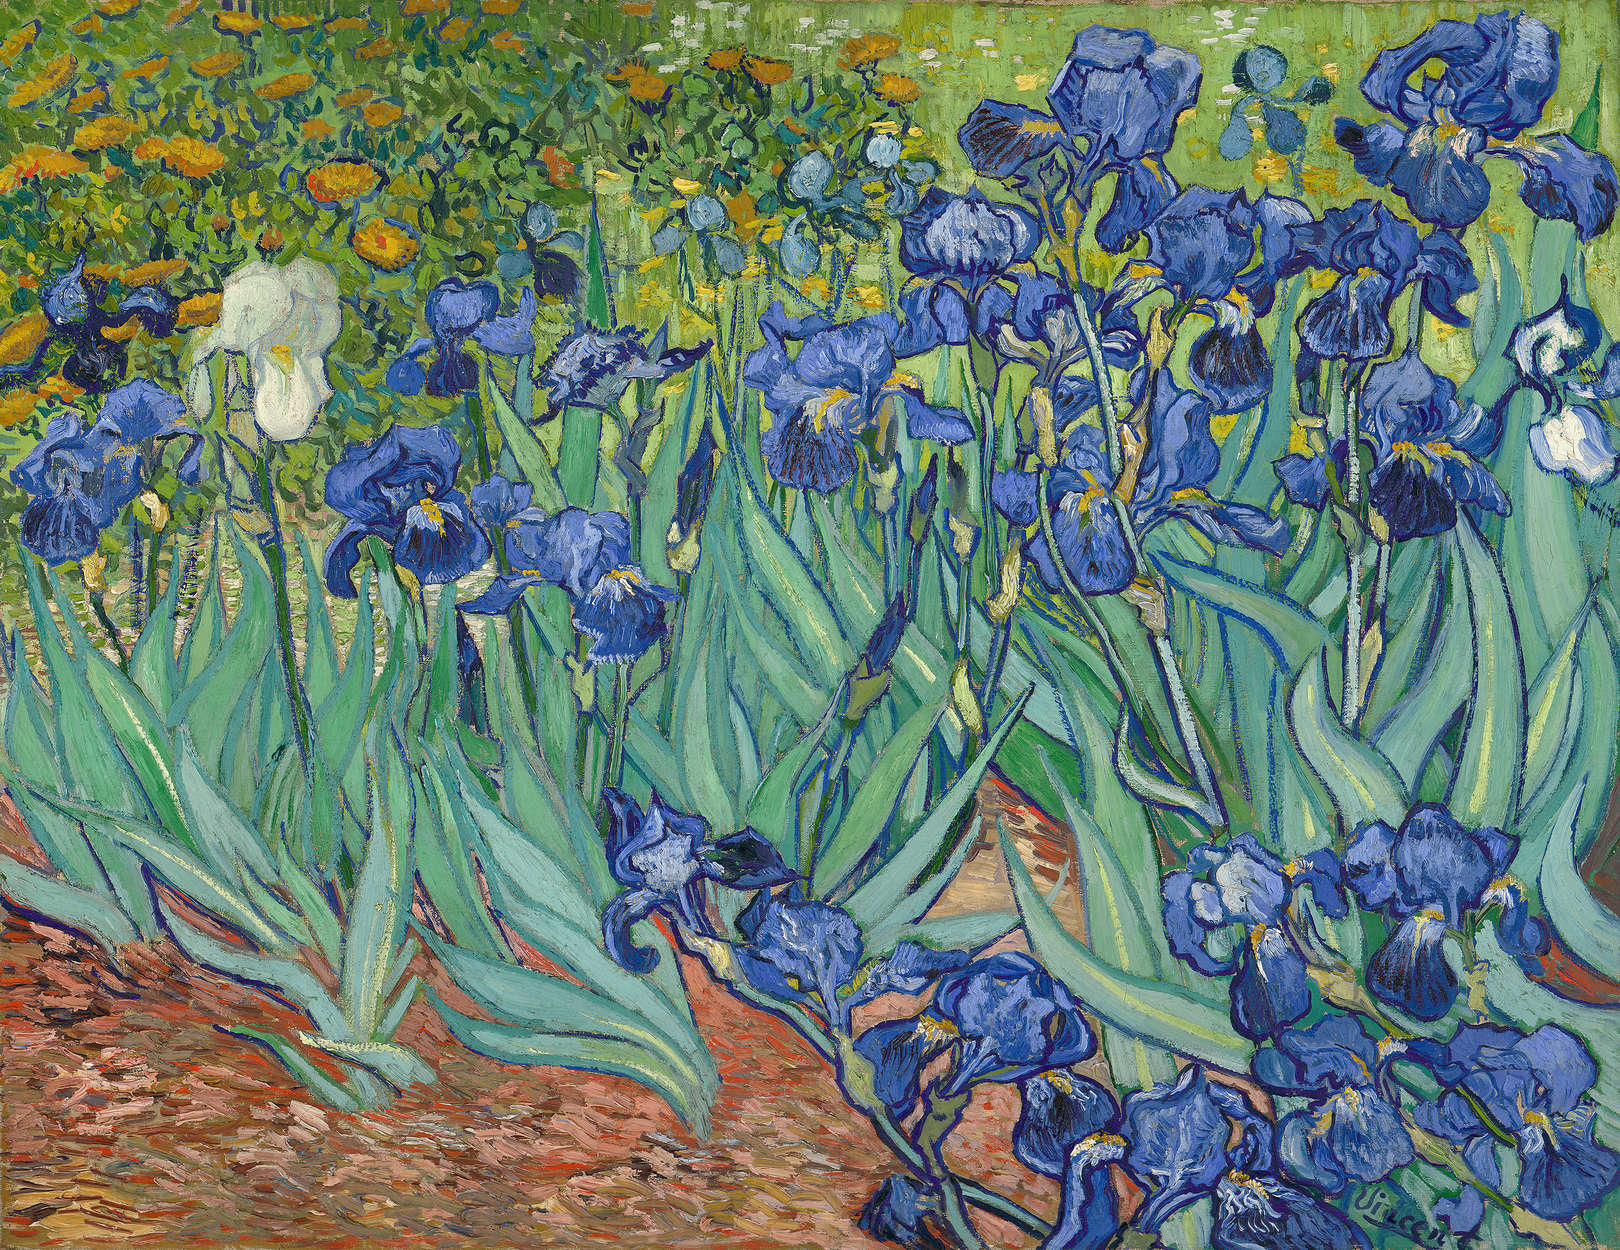             Mural "Irises" de Vincent van Gogh
        